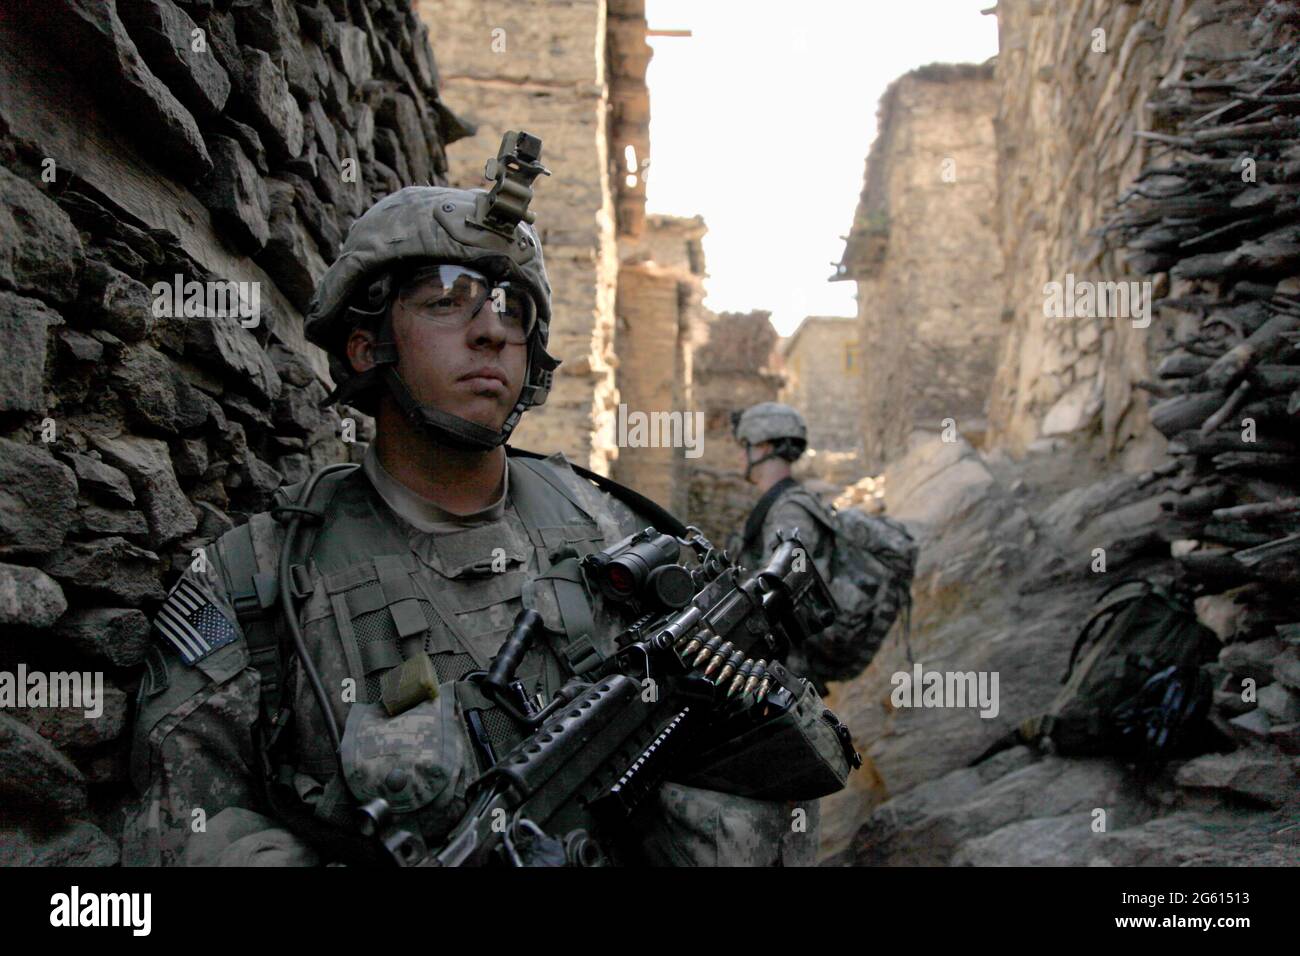 MASAMUTE BALA, PROVINCIA DI LAGHMAN, AFGHANISTAN Laghman - 25 settembre 2010 - soldati dell'esercito degli Stati Uniti con 1° Battaglione, 102° Reggimento di fanteria, 86° Brigata Foto Stock